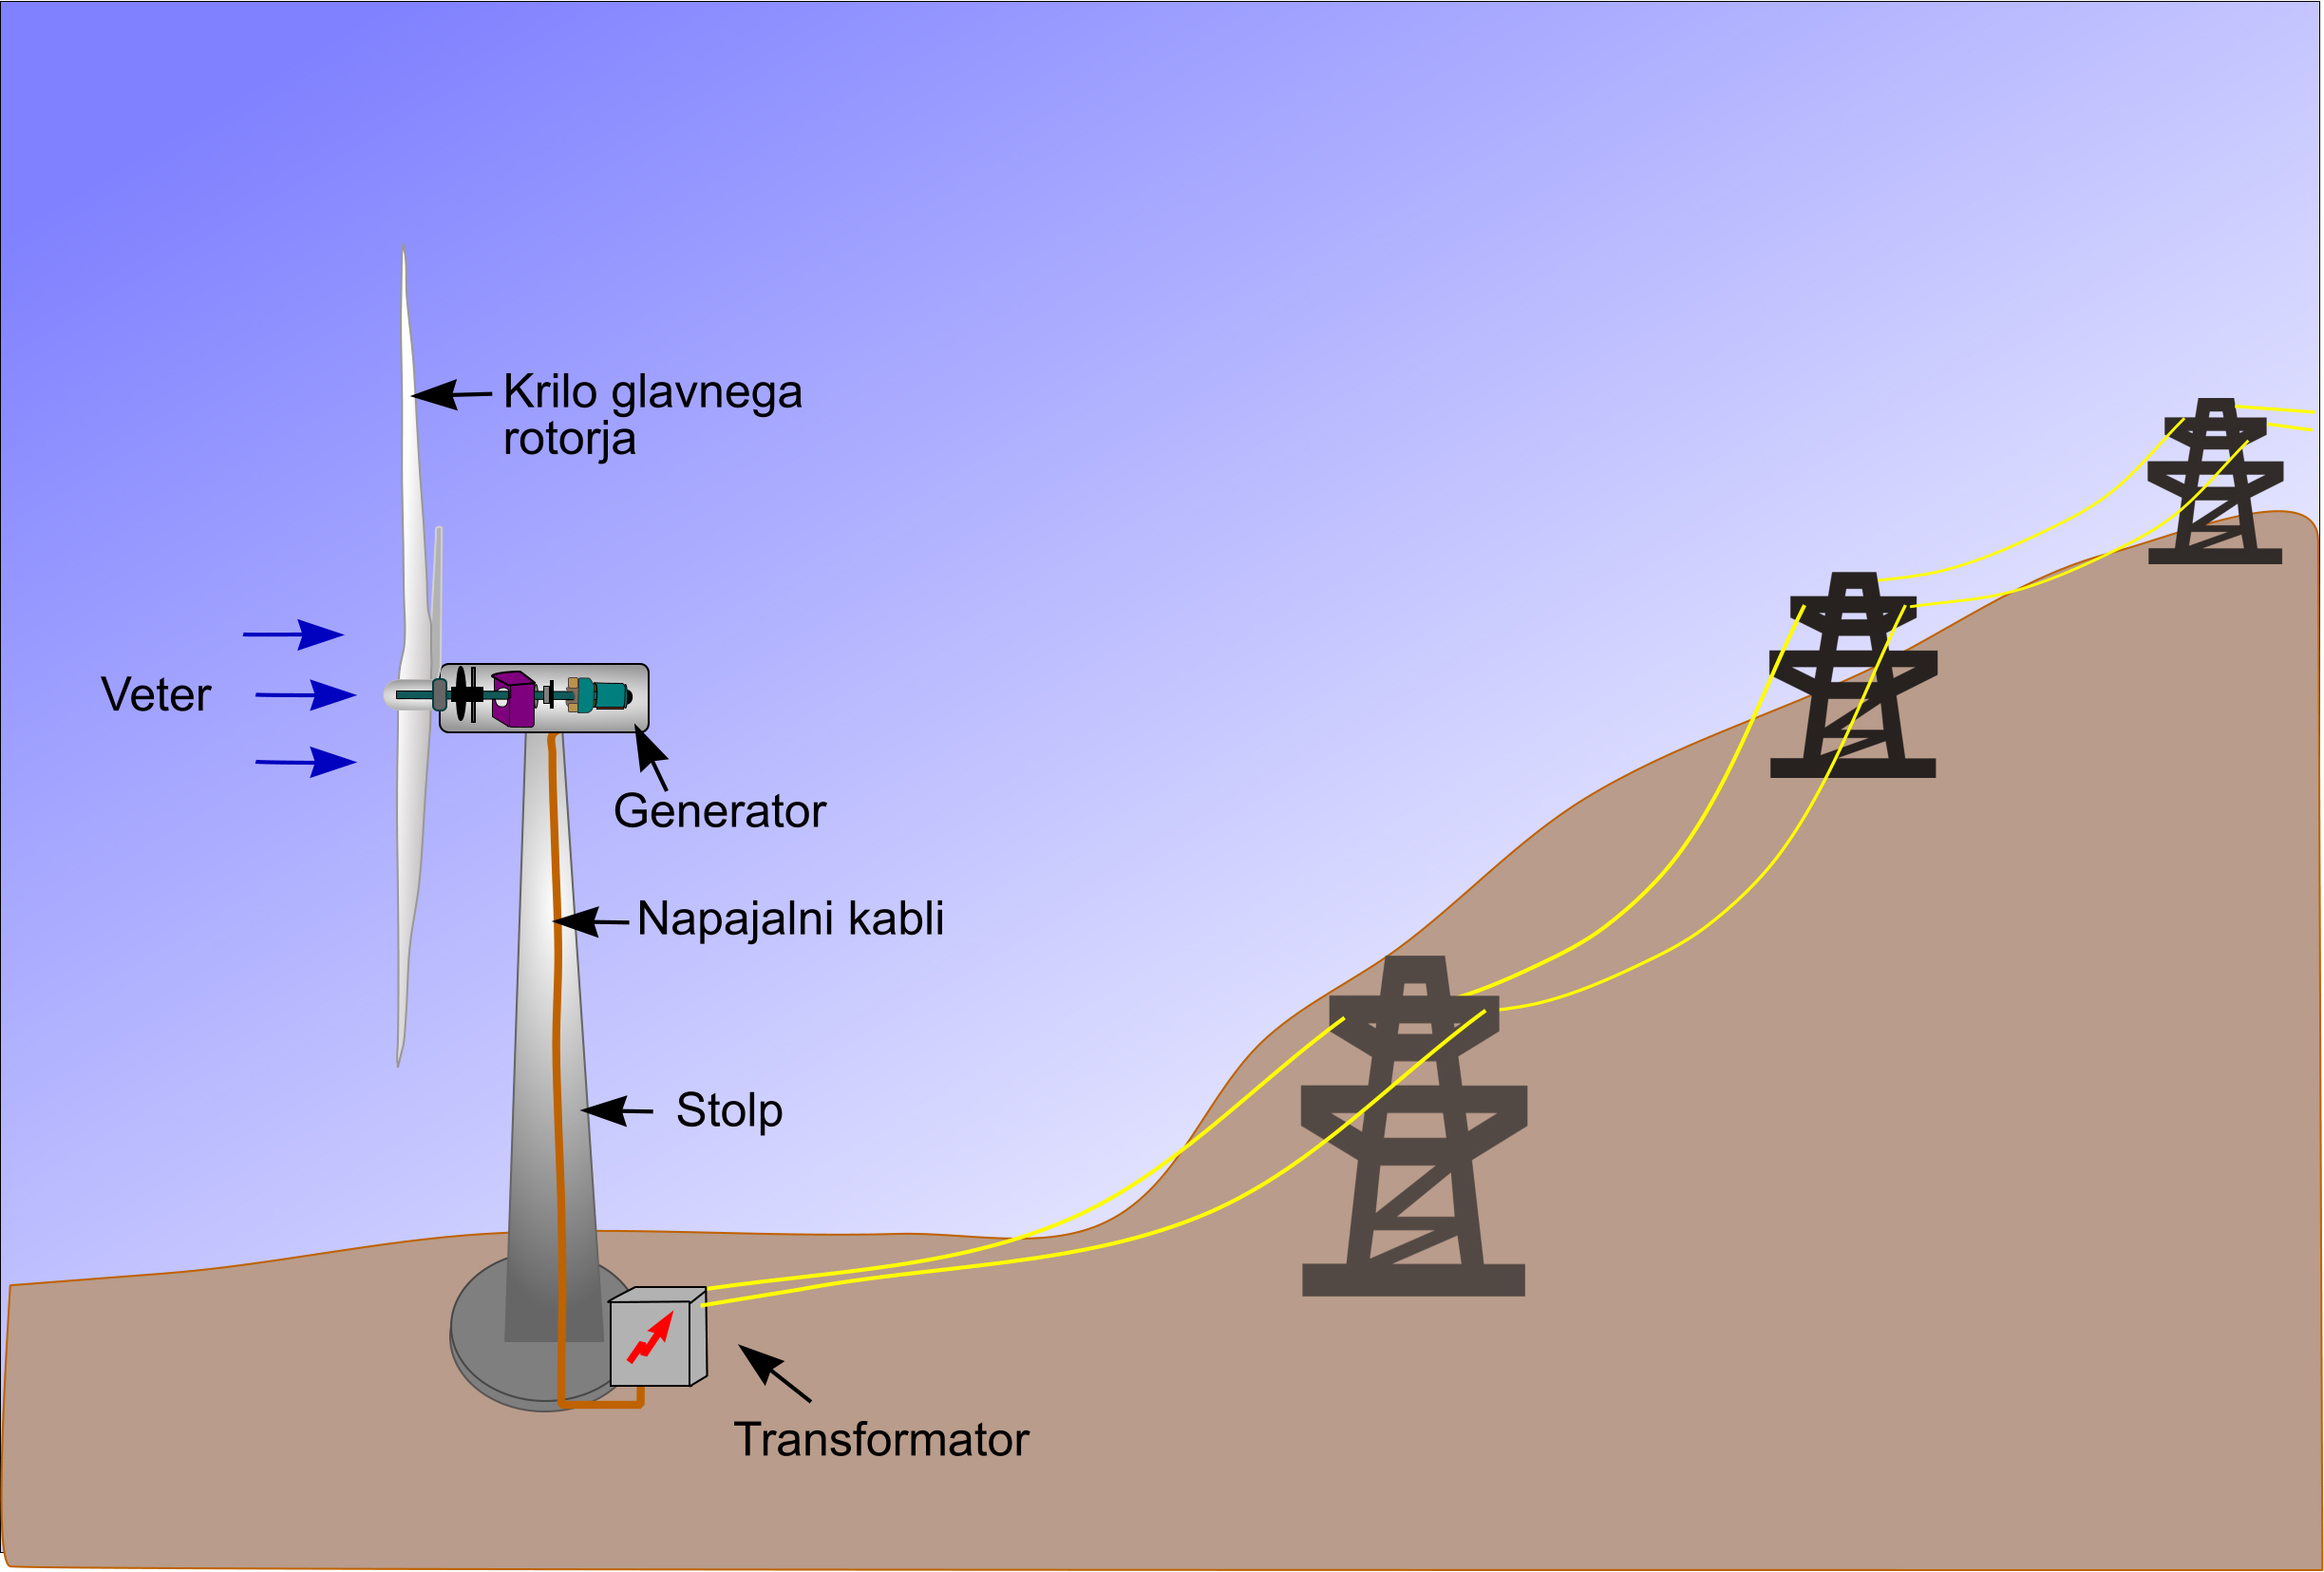 Slika št. 3 - Vetrovi poganjajo pogonske turbine, ki generatorjem omogočajo pretvorbo kinetične energije v električno energijo